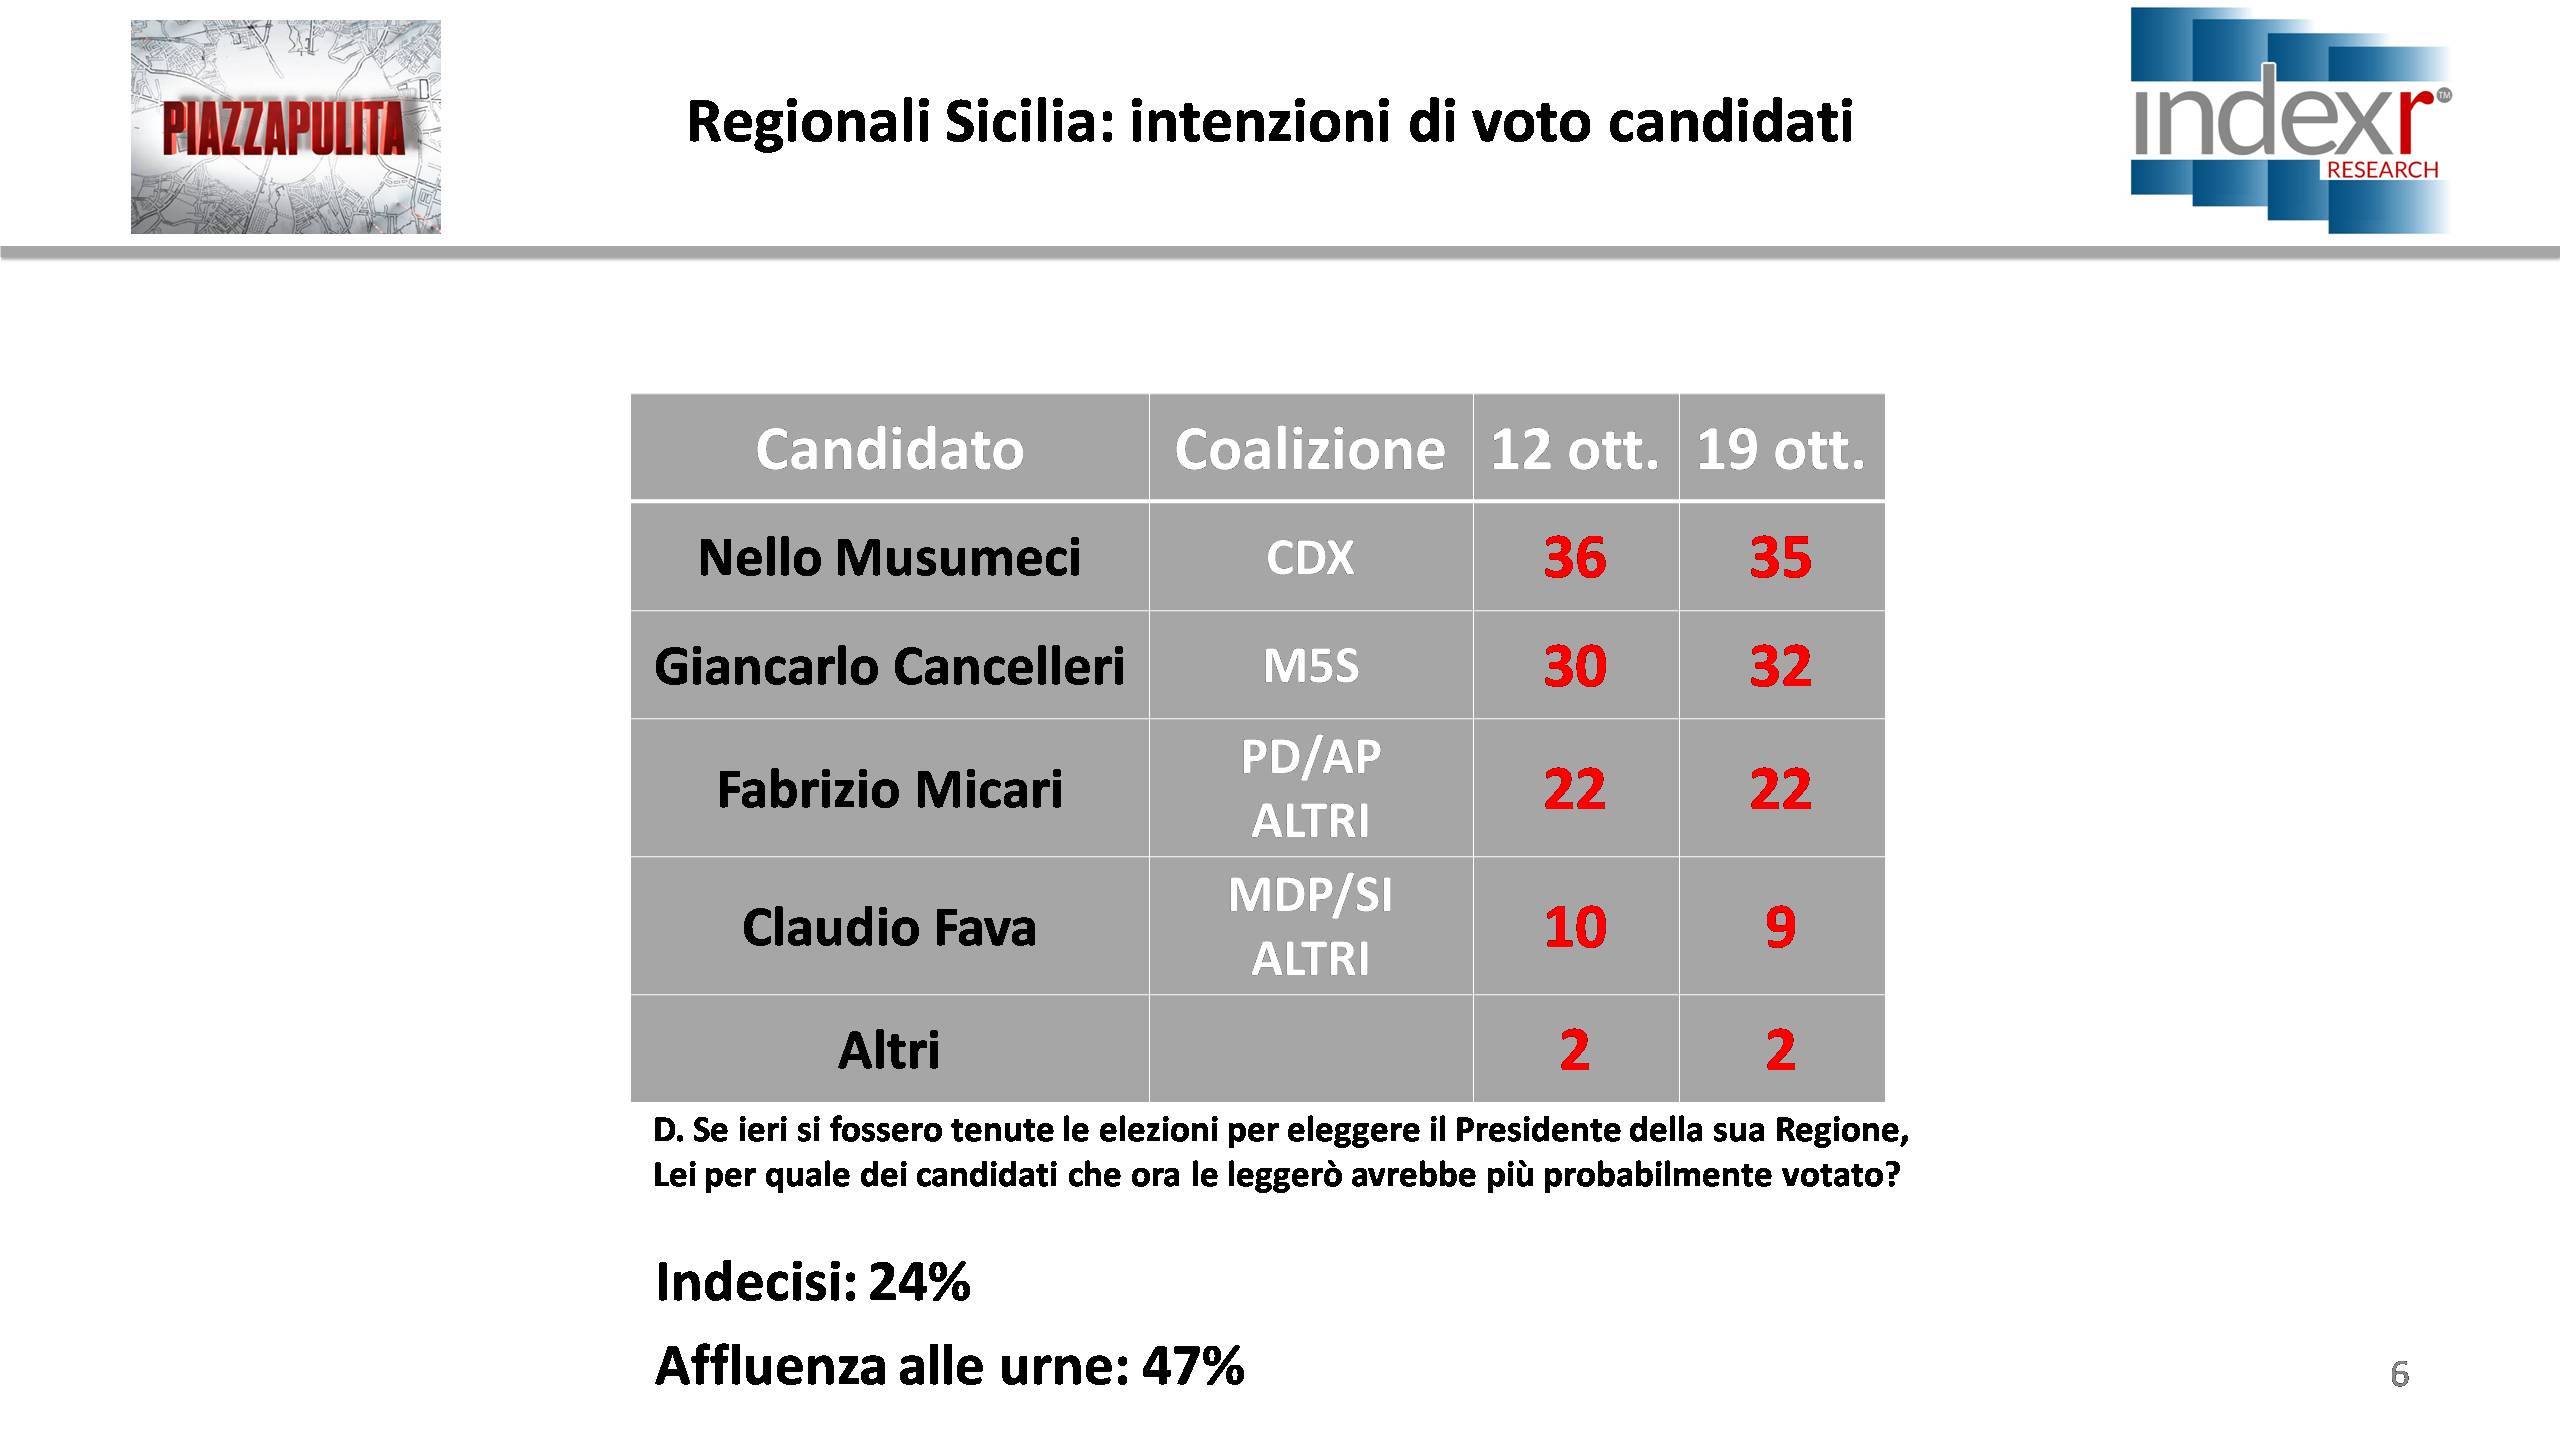 Sondaggio INDEX RESEARCH 20 ottobre 2017: Elezioni Regionali Sicilia 2017